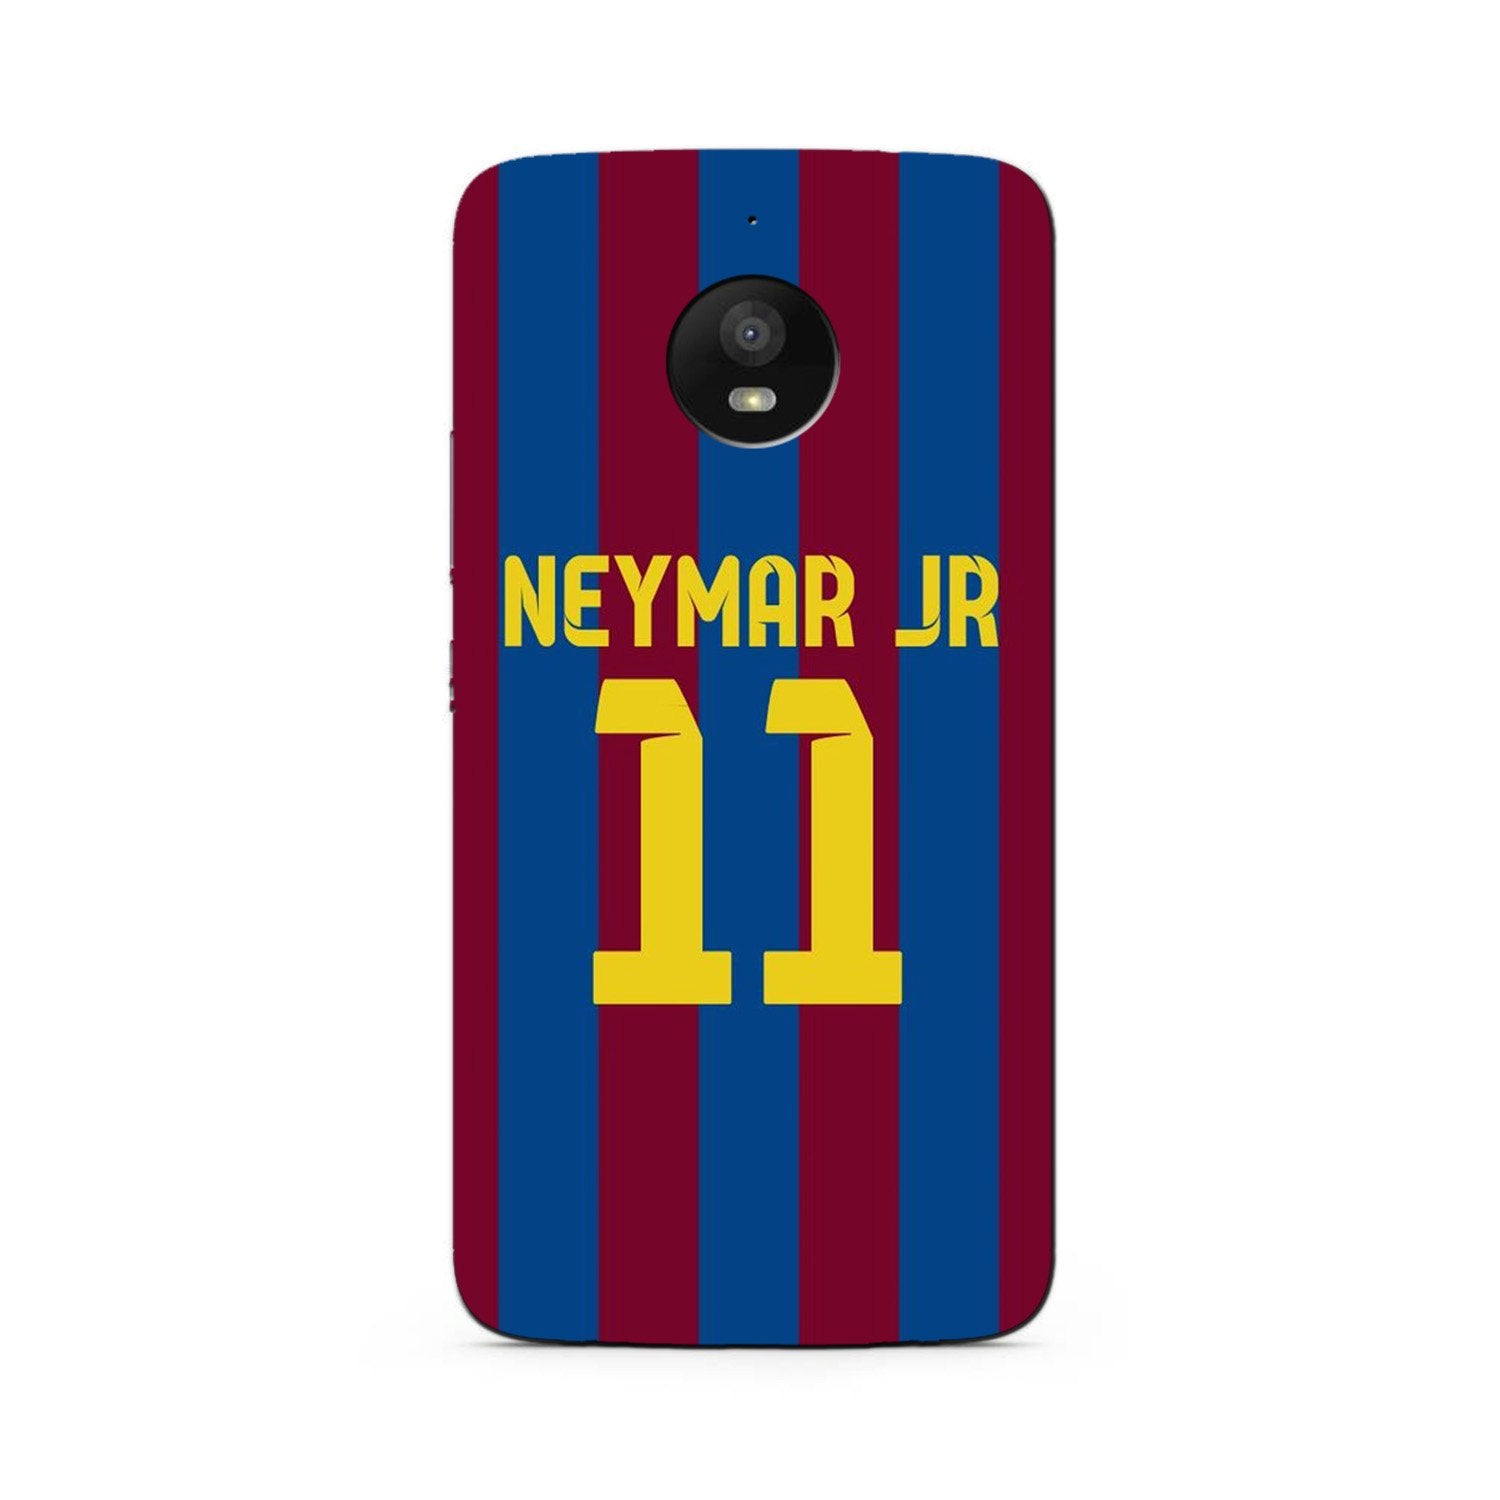 Neymar Jr Case for Moto G5s Plus(Design - 162)